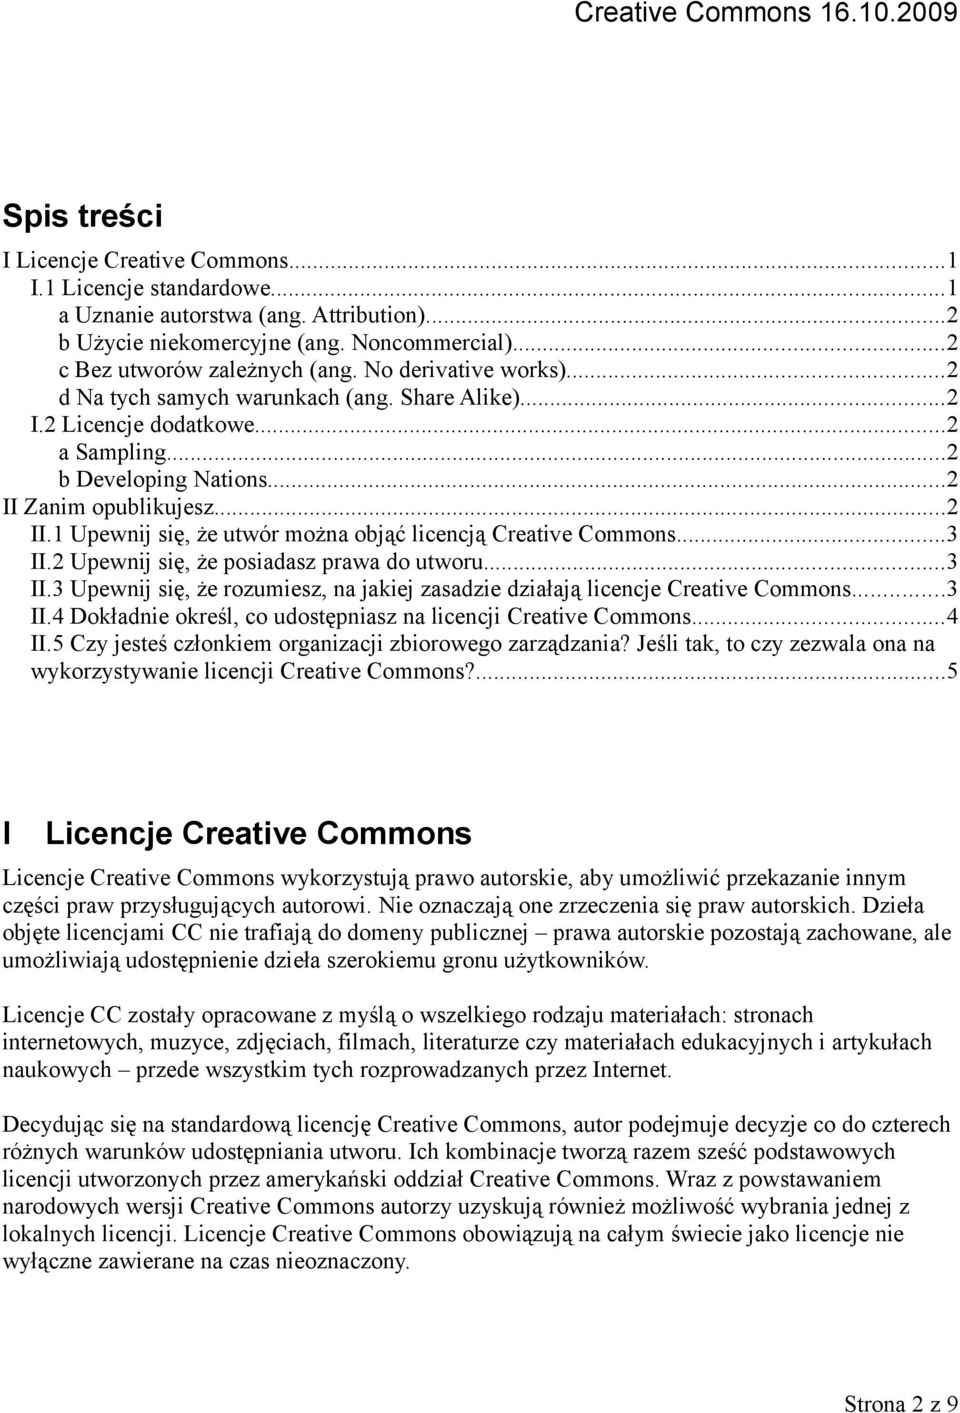 Zanim opublikujesz...2 II.1 Upewnij się, że utwór można objąć licencją Creative Commons...3 II.2 Upewnij się, że posiadasz prawa do utworu...3 II.3 Upewnij się, że rozumiesz, na jakiej zasadzie działają licencje Creative Commons.